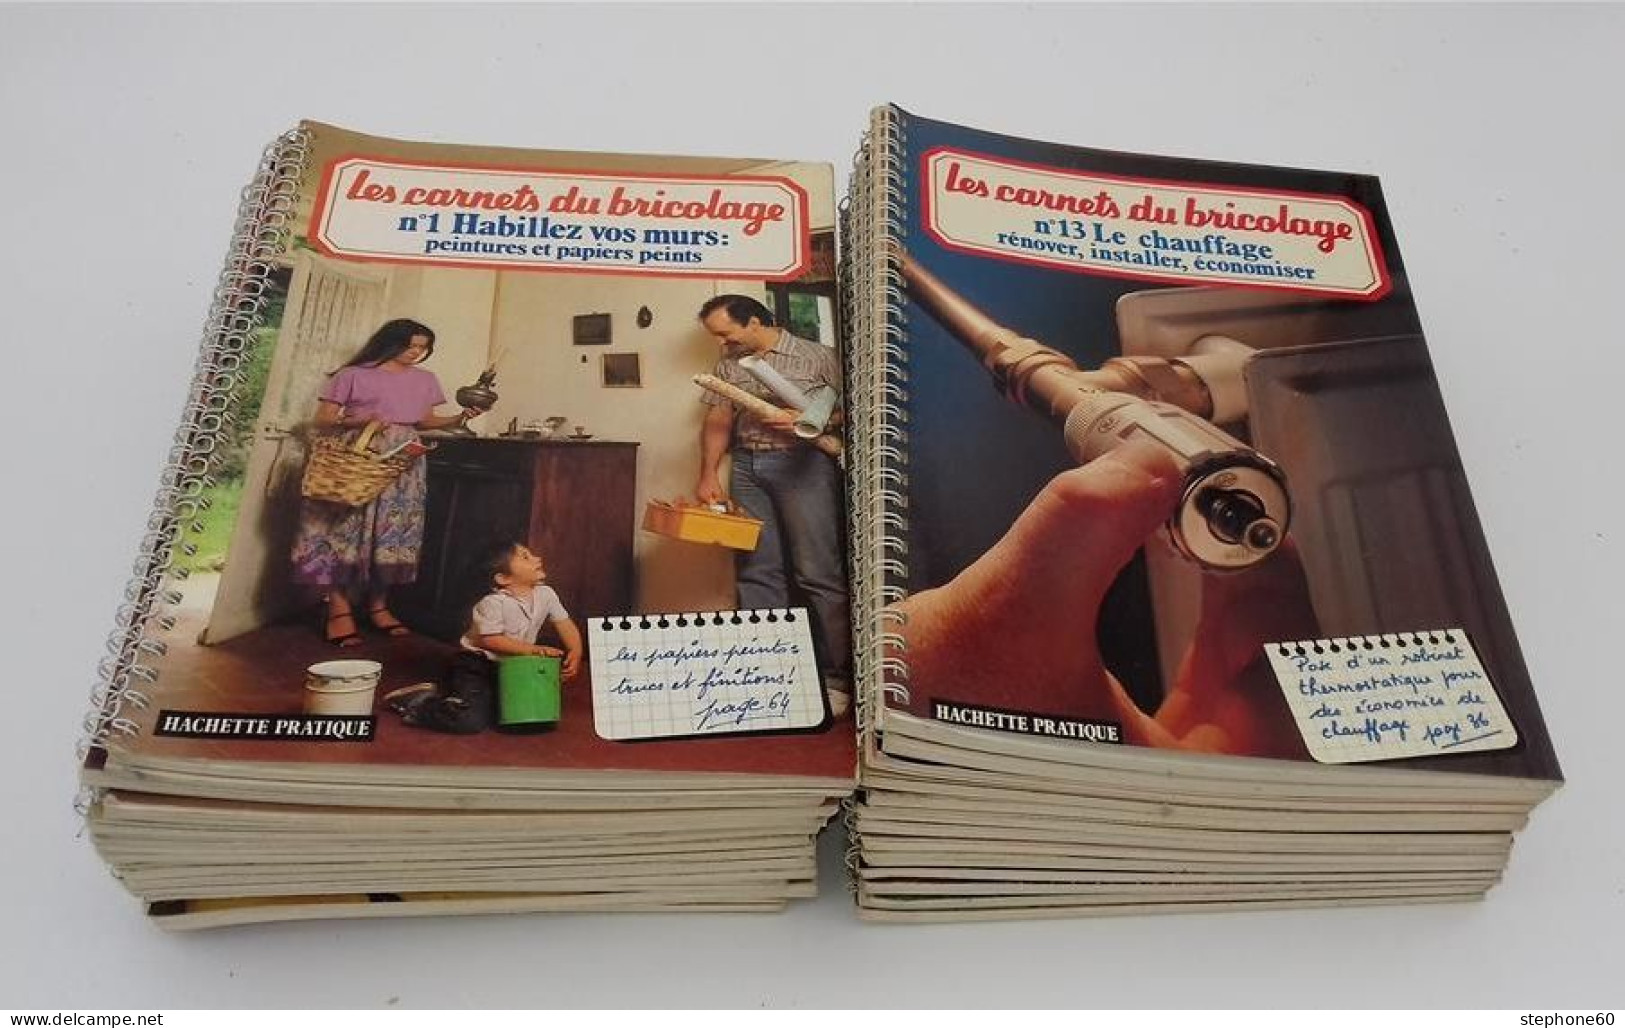 999 - (347) Lot De 25 Livres - Les Carnets Du Bricolage - Lots De Plusieurs Livres